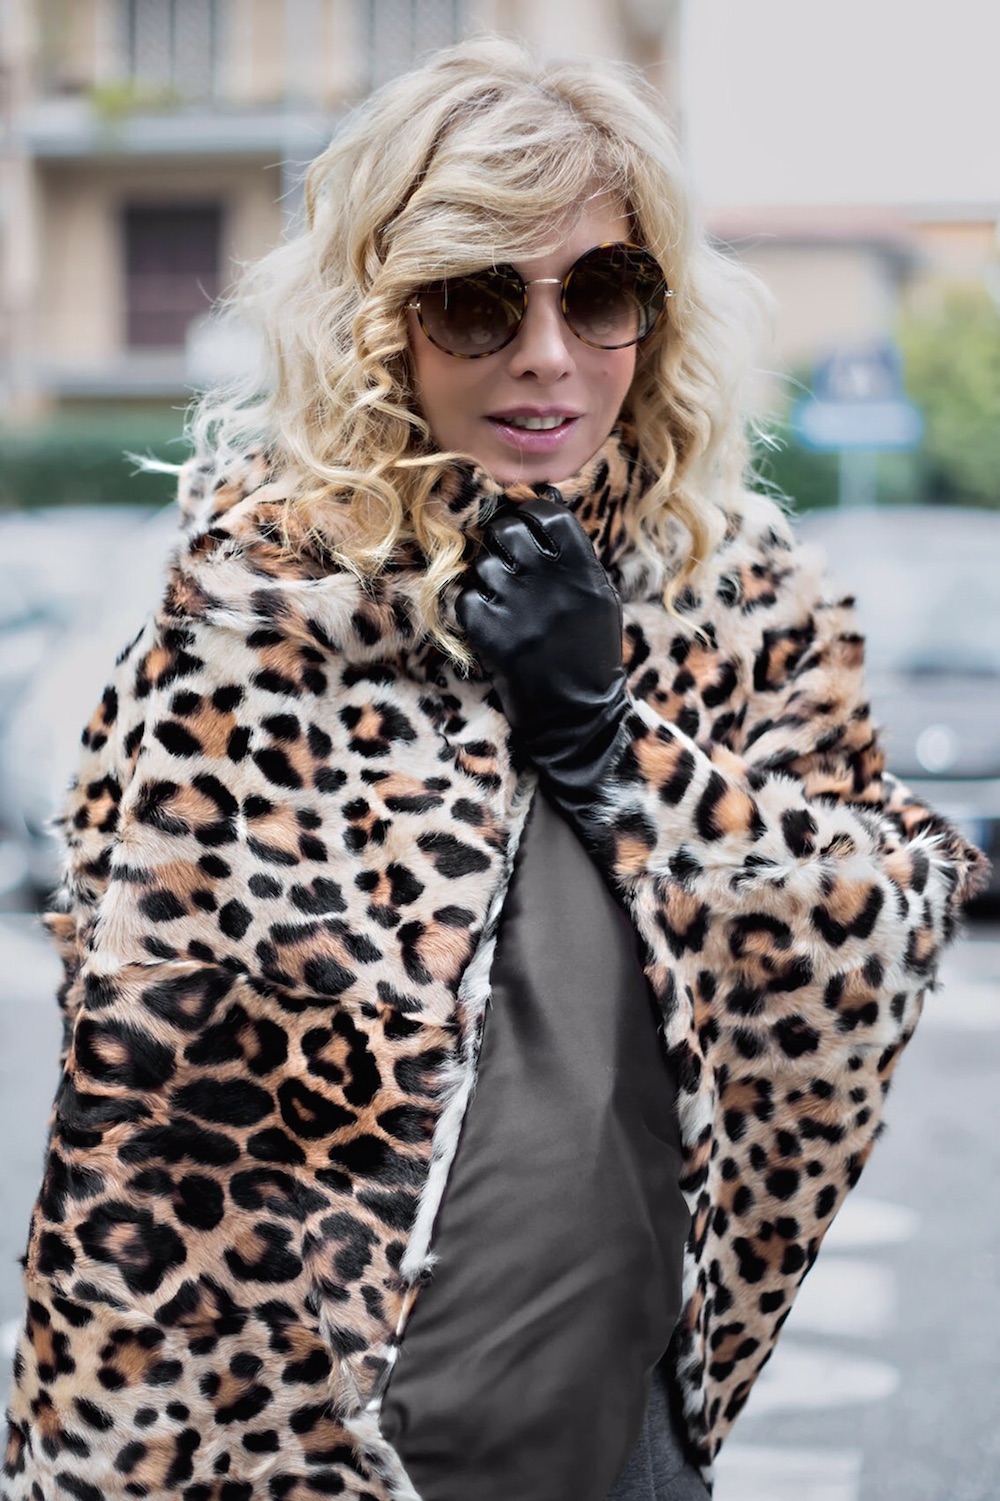 cappe e mantelle la moda street style le vuole più cool che mai